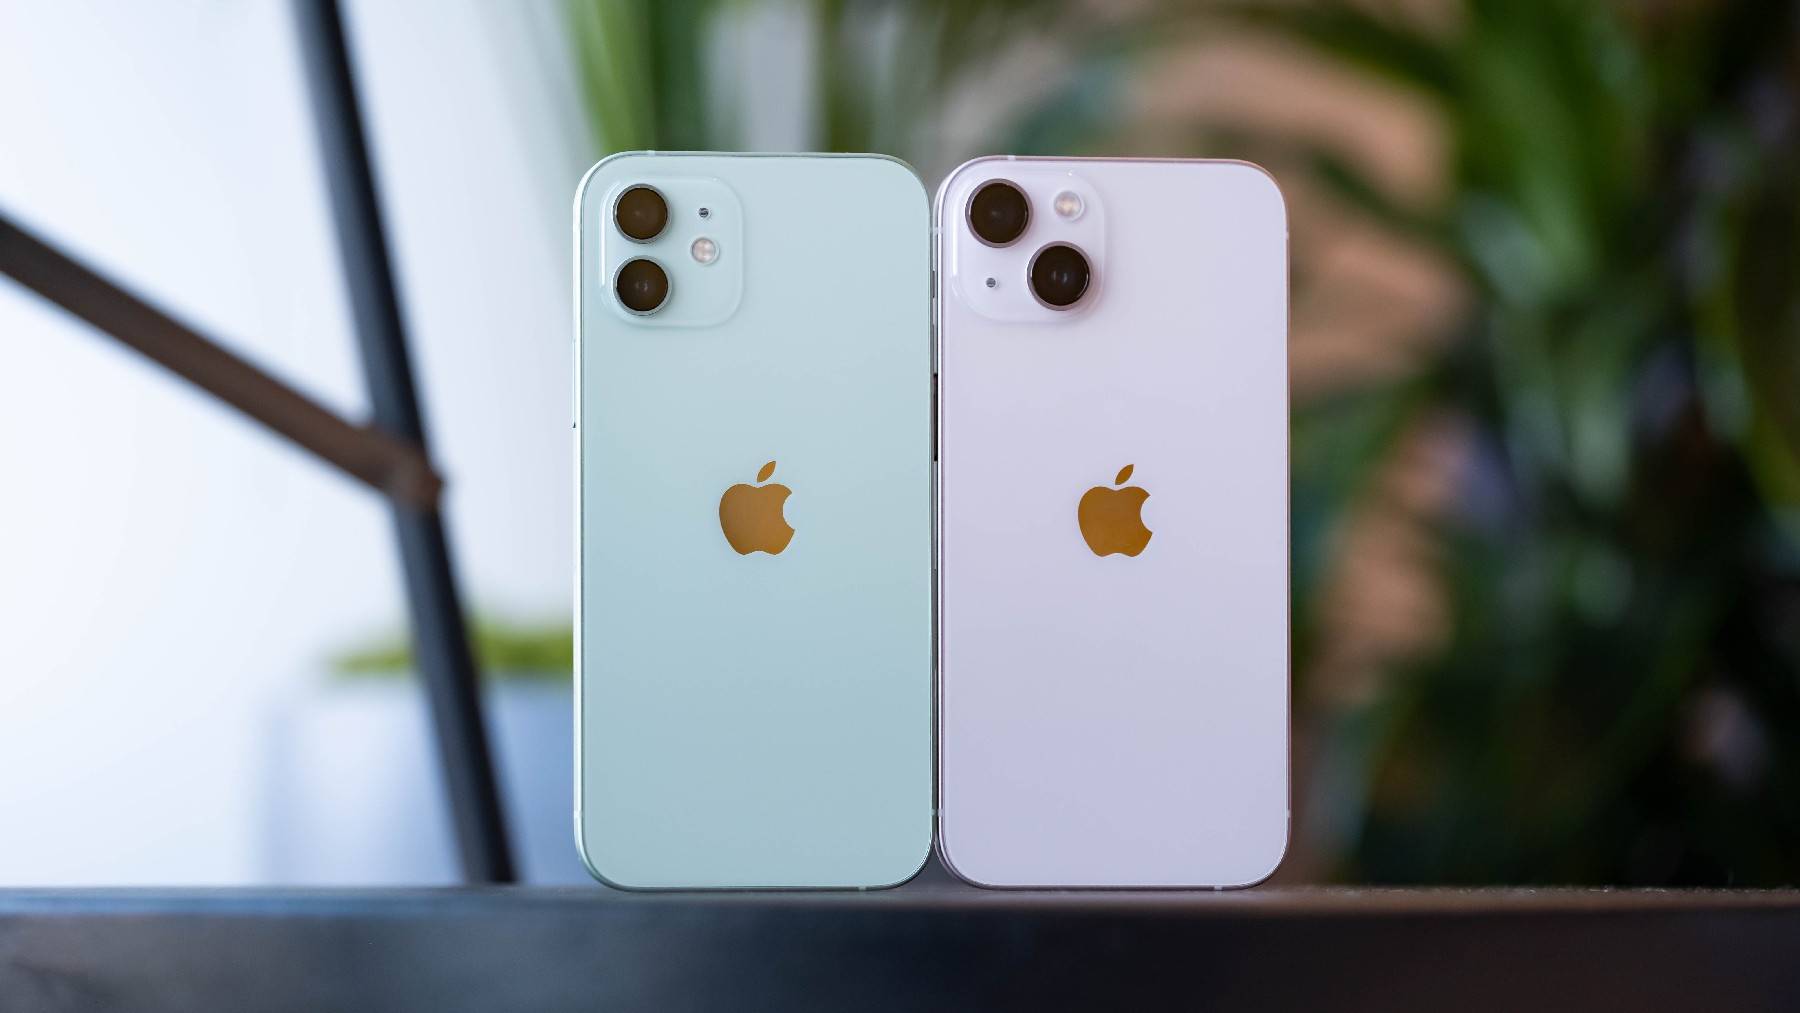  Apple giảm giá đậm tới 40% các mẫu iPhone, iPad, MacBook và Apple Watch tại Việt Nam  - Ảnh 1.